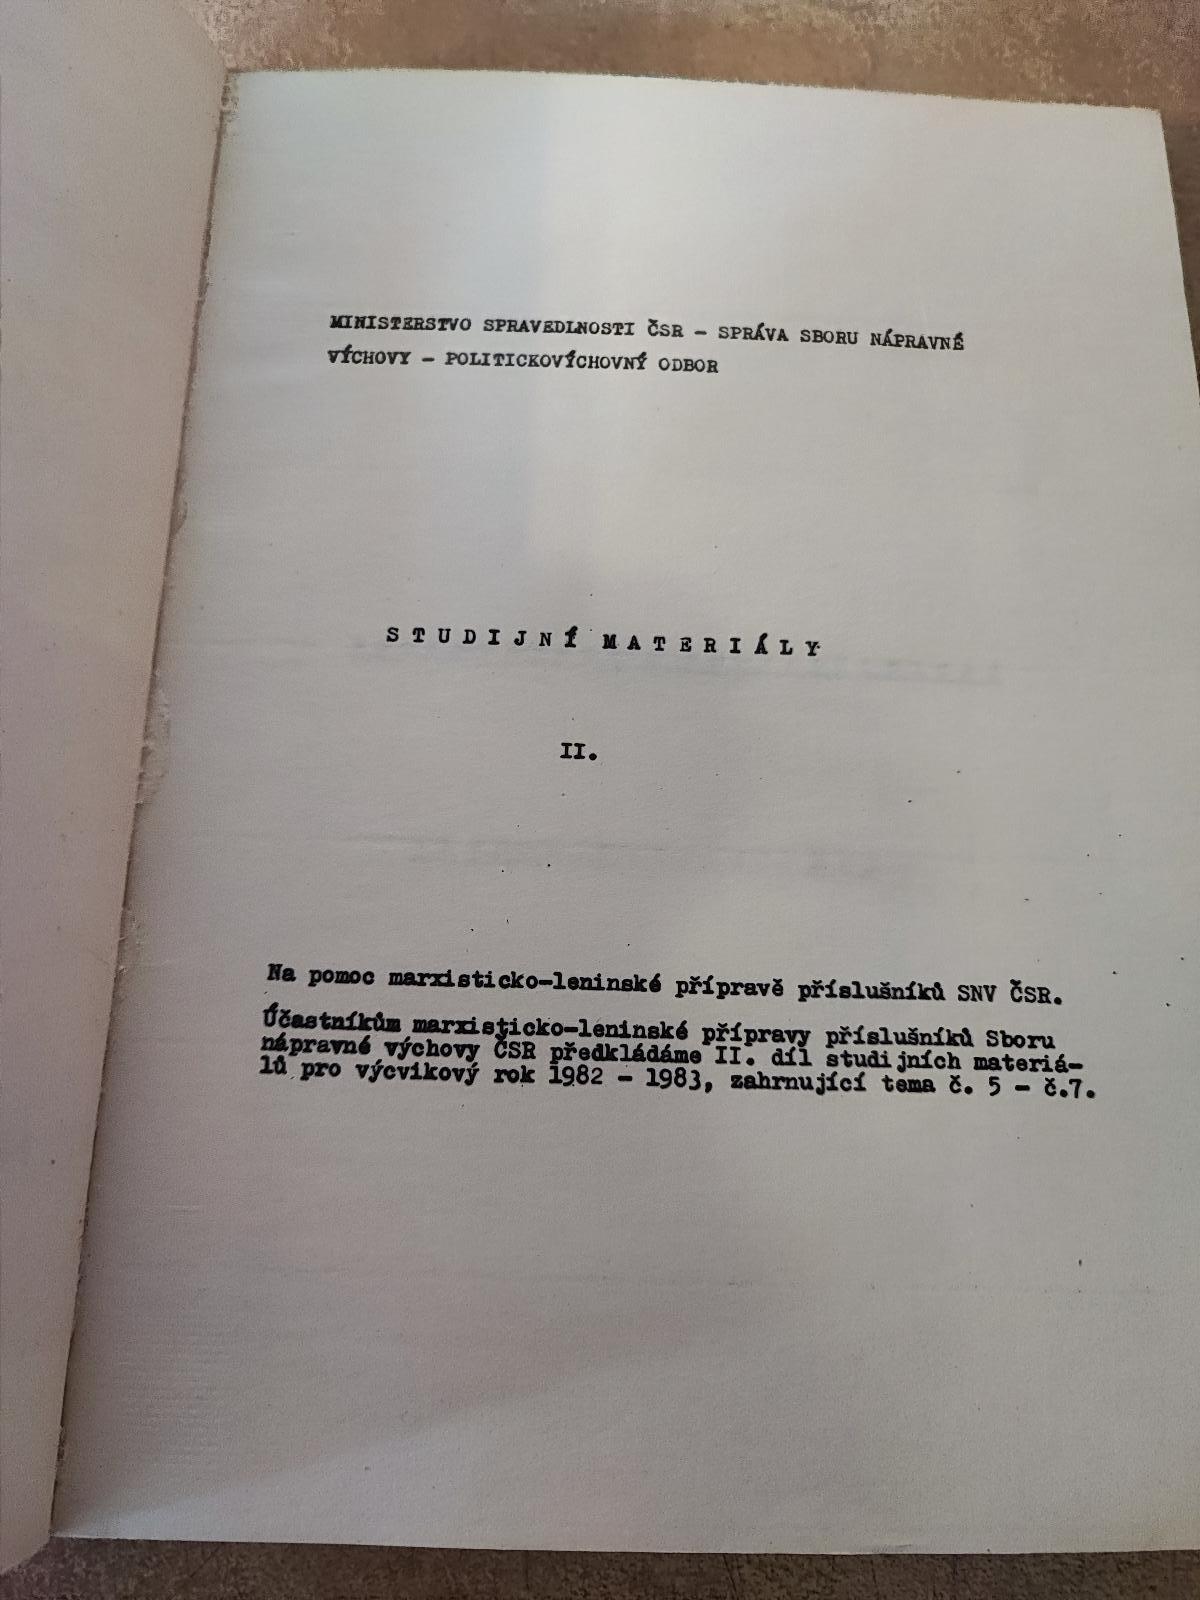 Ministerstvo spravodlivosti 1982/1983, 2'Študijné materiály - Knihy